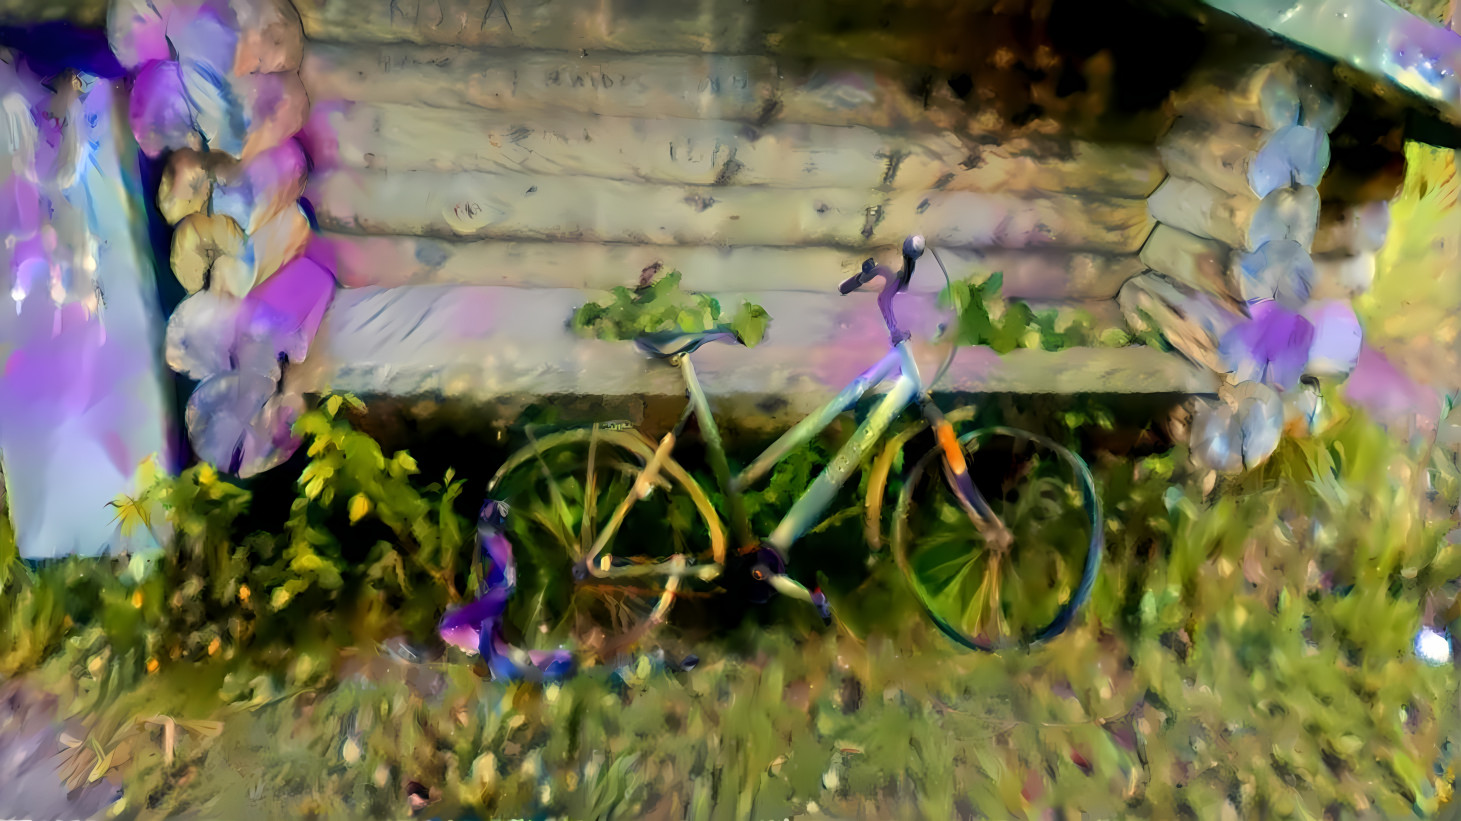 Lilac Bike again